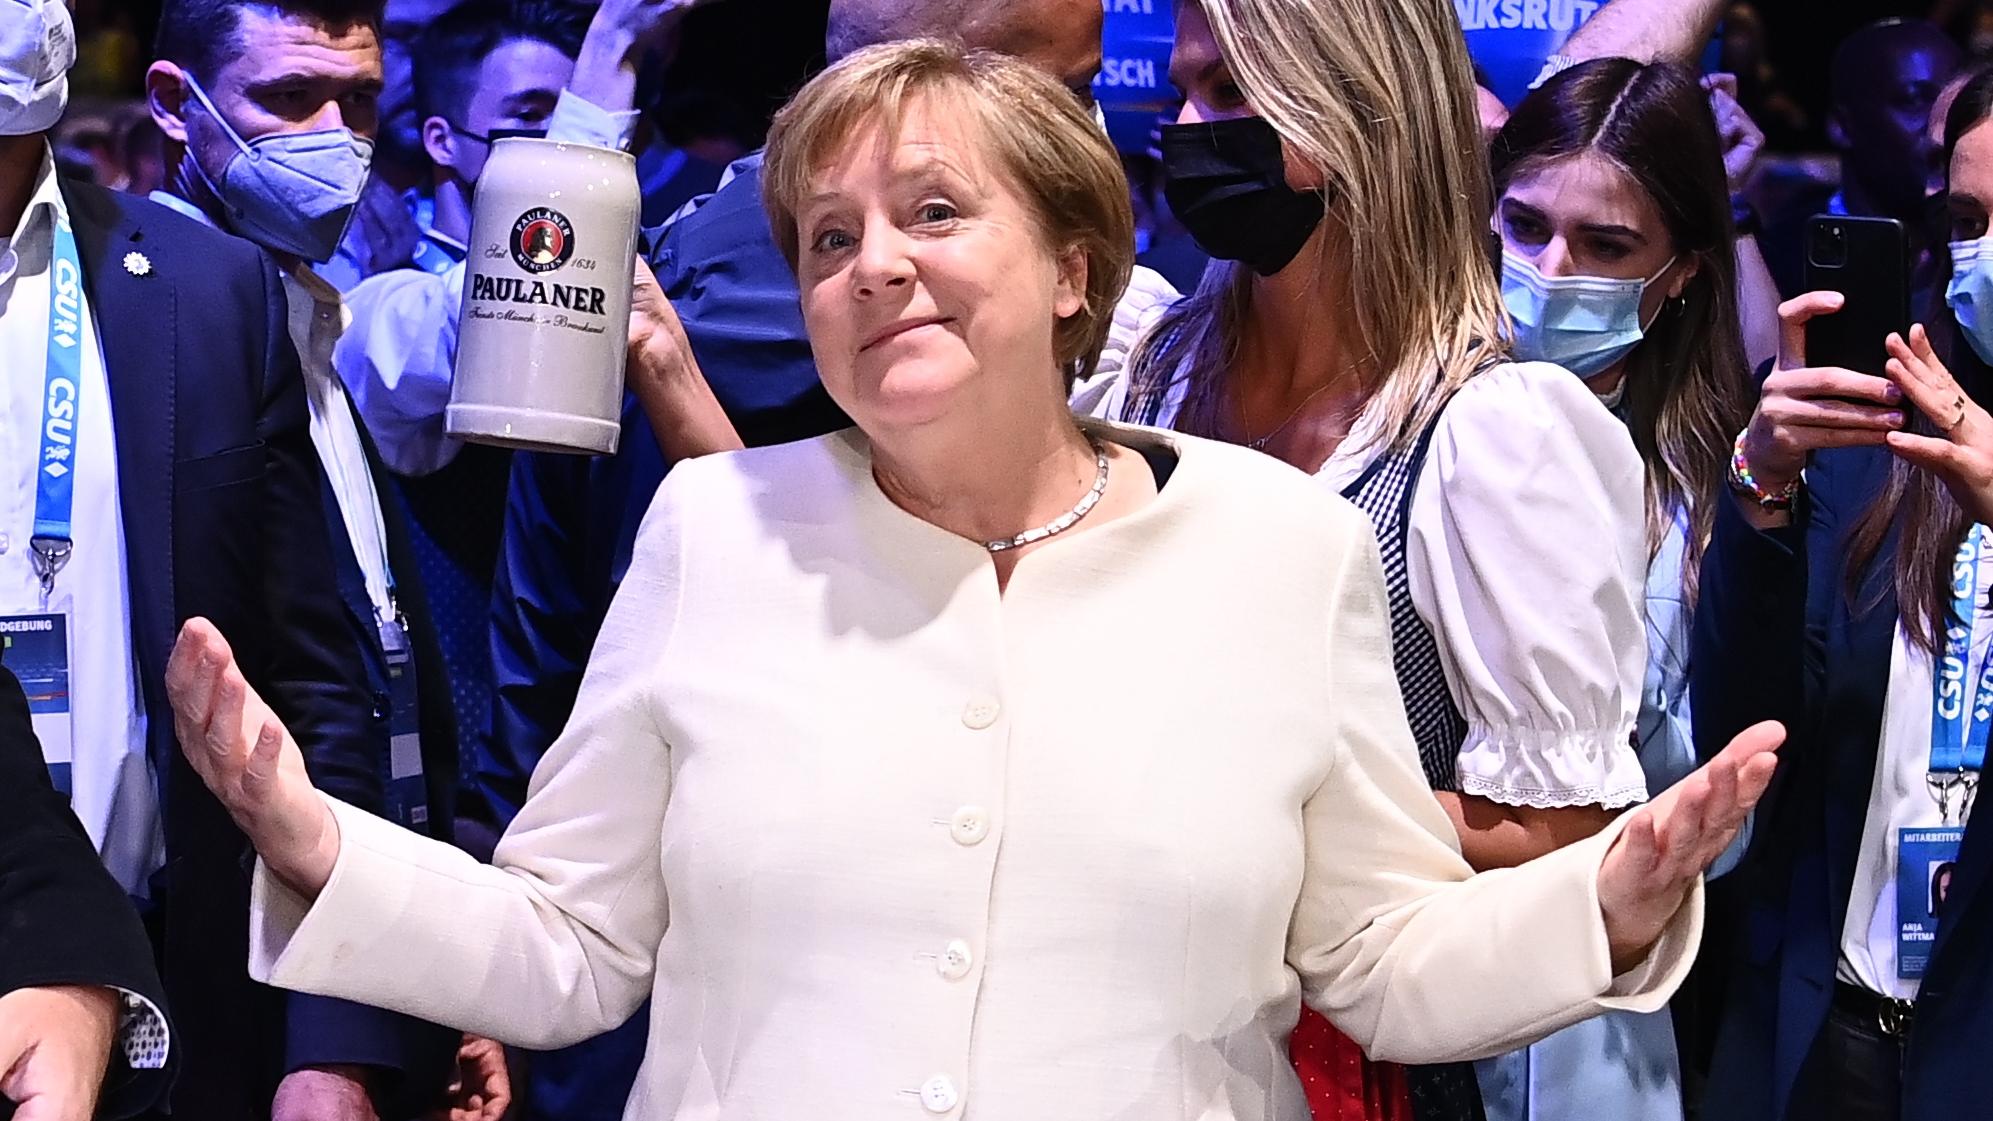 Hôm nay nước Đức sang trang mới: Sau 16 năm cầm quyền, lịch sử sẽ nhớ đến bà Angela Merkel thế nào? - Ảnh 1.